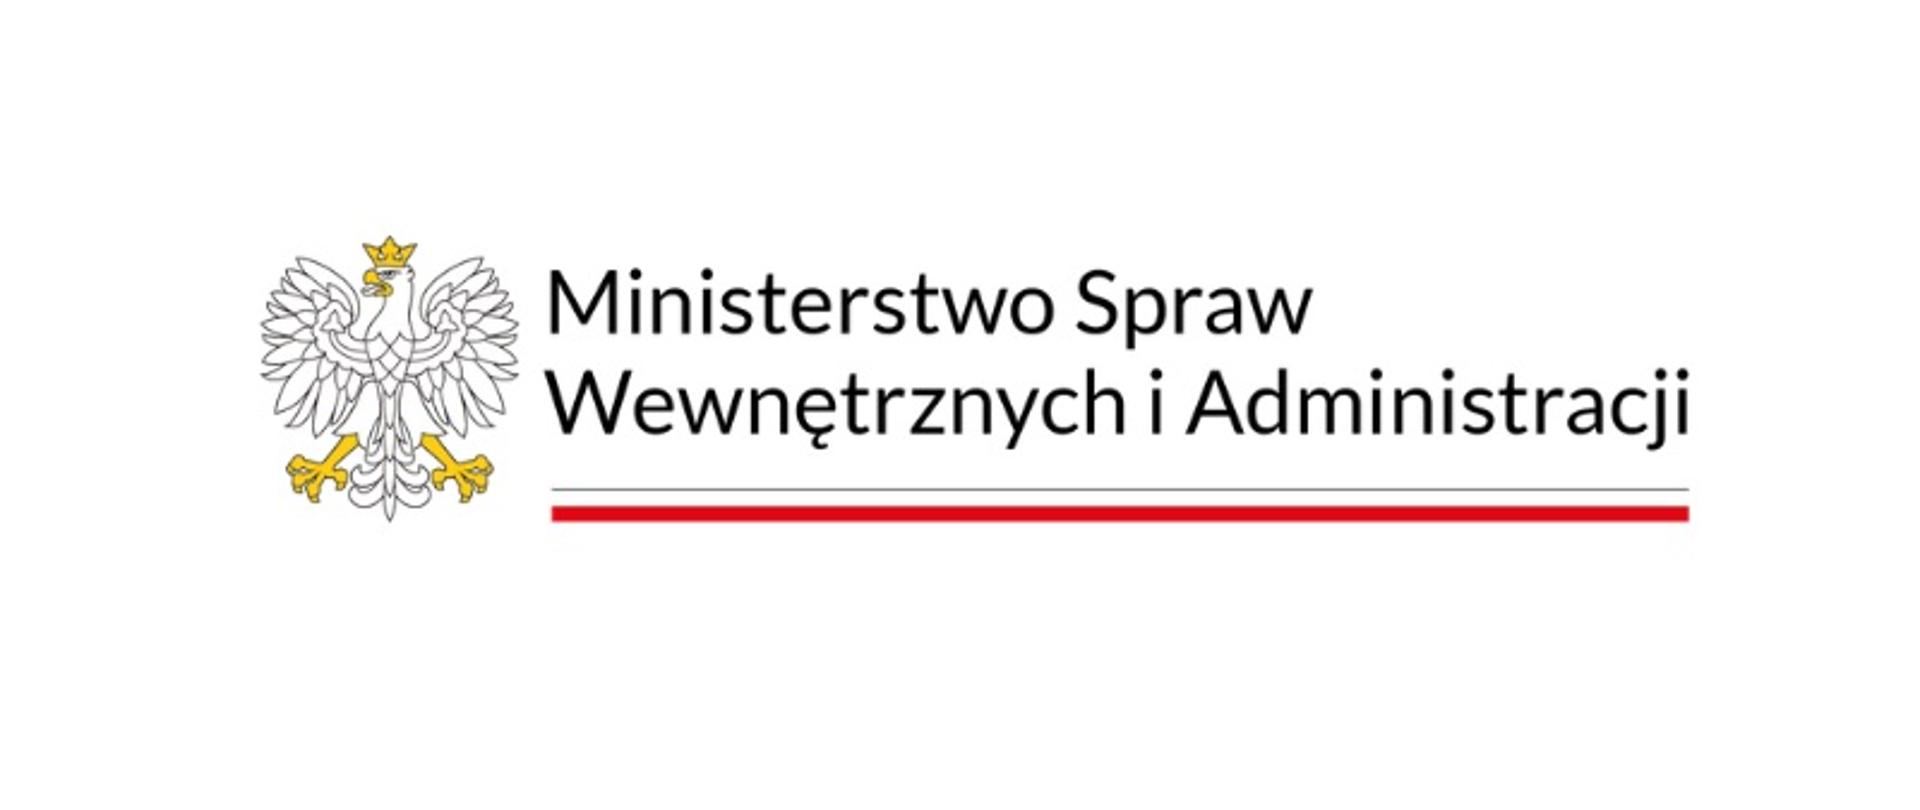 Zdjęcie przedstawia z lewej strony Orła z godła Polski oraz z prawej napis Ministrstwo Spraw Wewnętrznych i Administracji